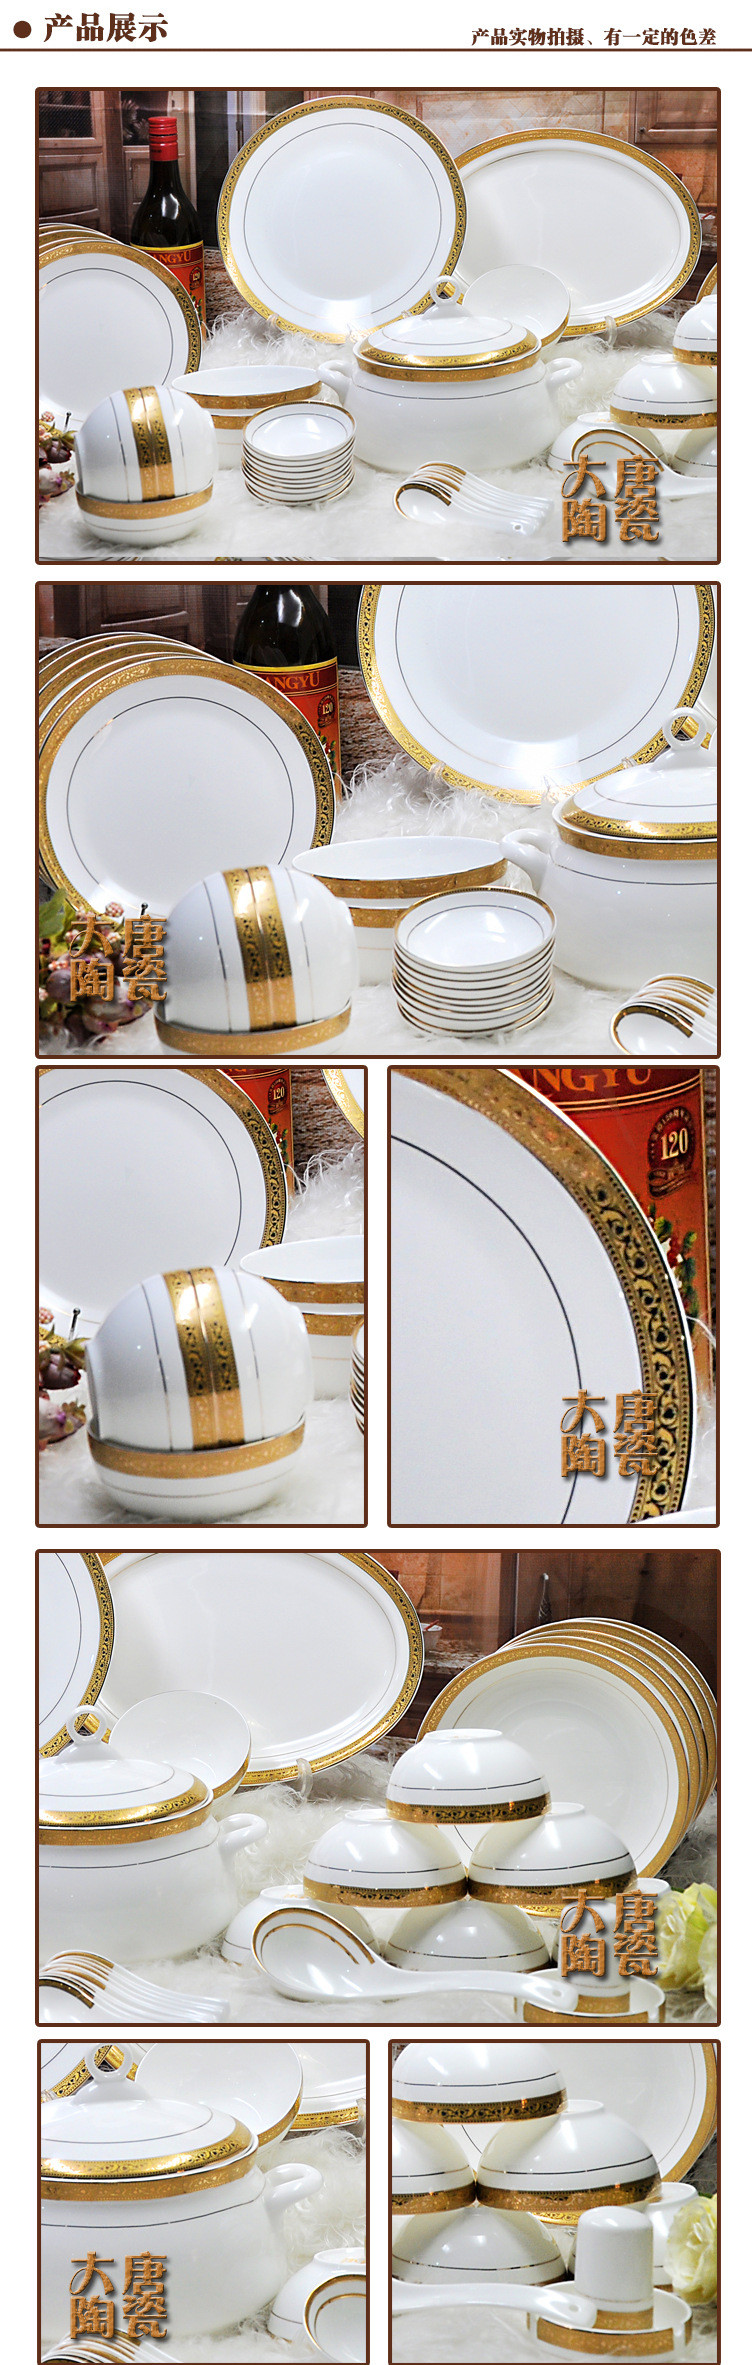 中式骨瓷碗碟盘餐具套装 高档简约 中式家用陶瓷定制碗盘碗碟套装示例图5